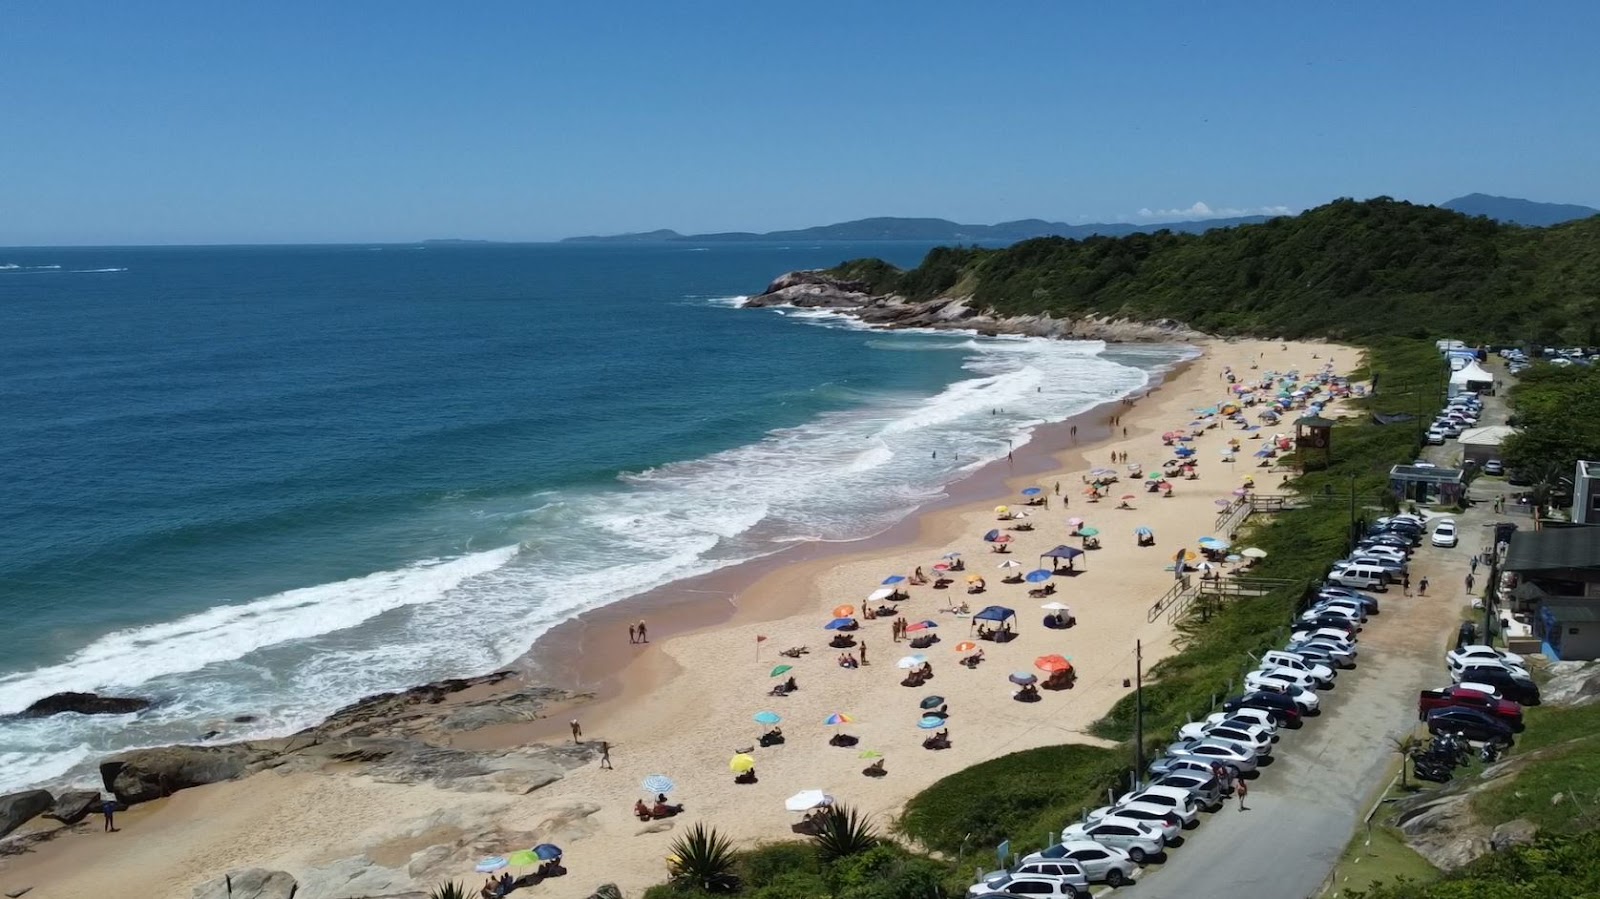 Praia do Pinho'in fotoğrafı parlak kum yüzey ile